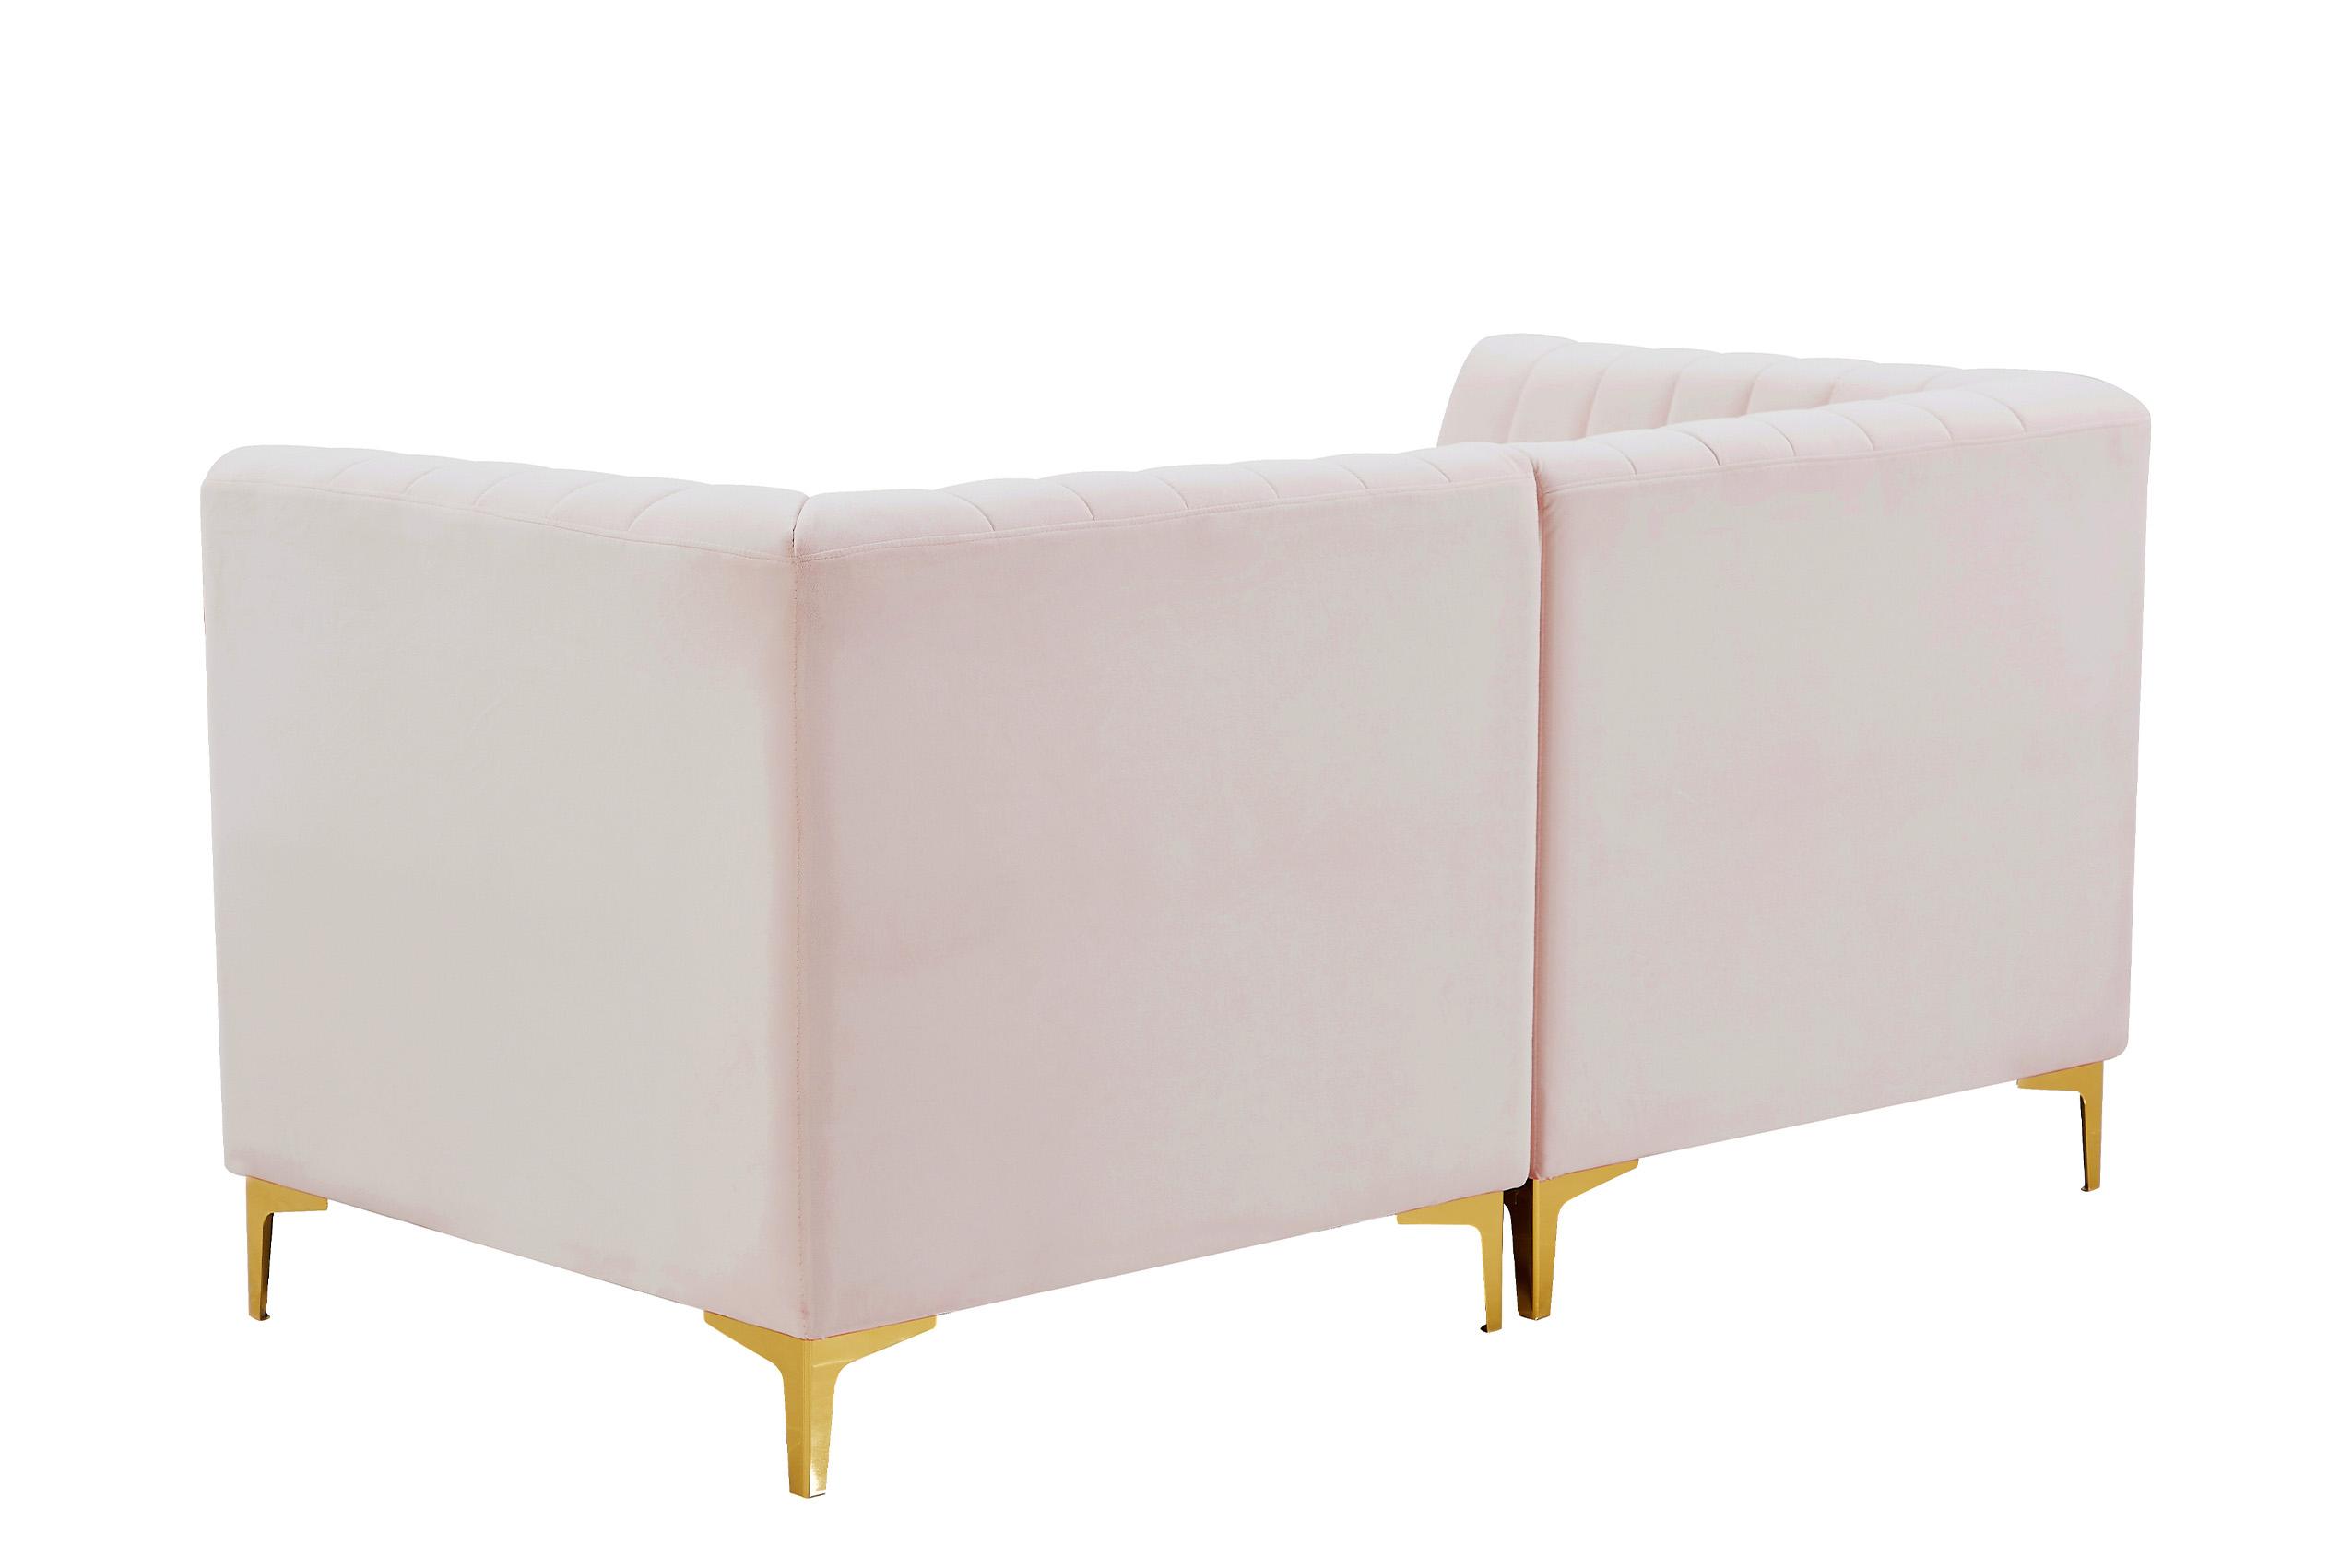 

    
604Pink-S67 Meridian Furniture Modular Sectional Sofa
